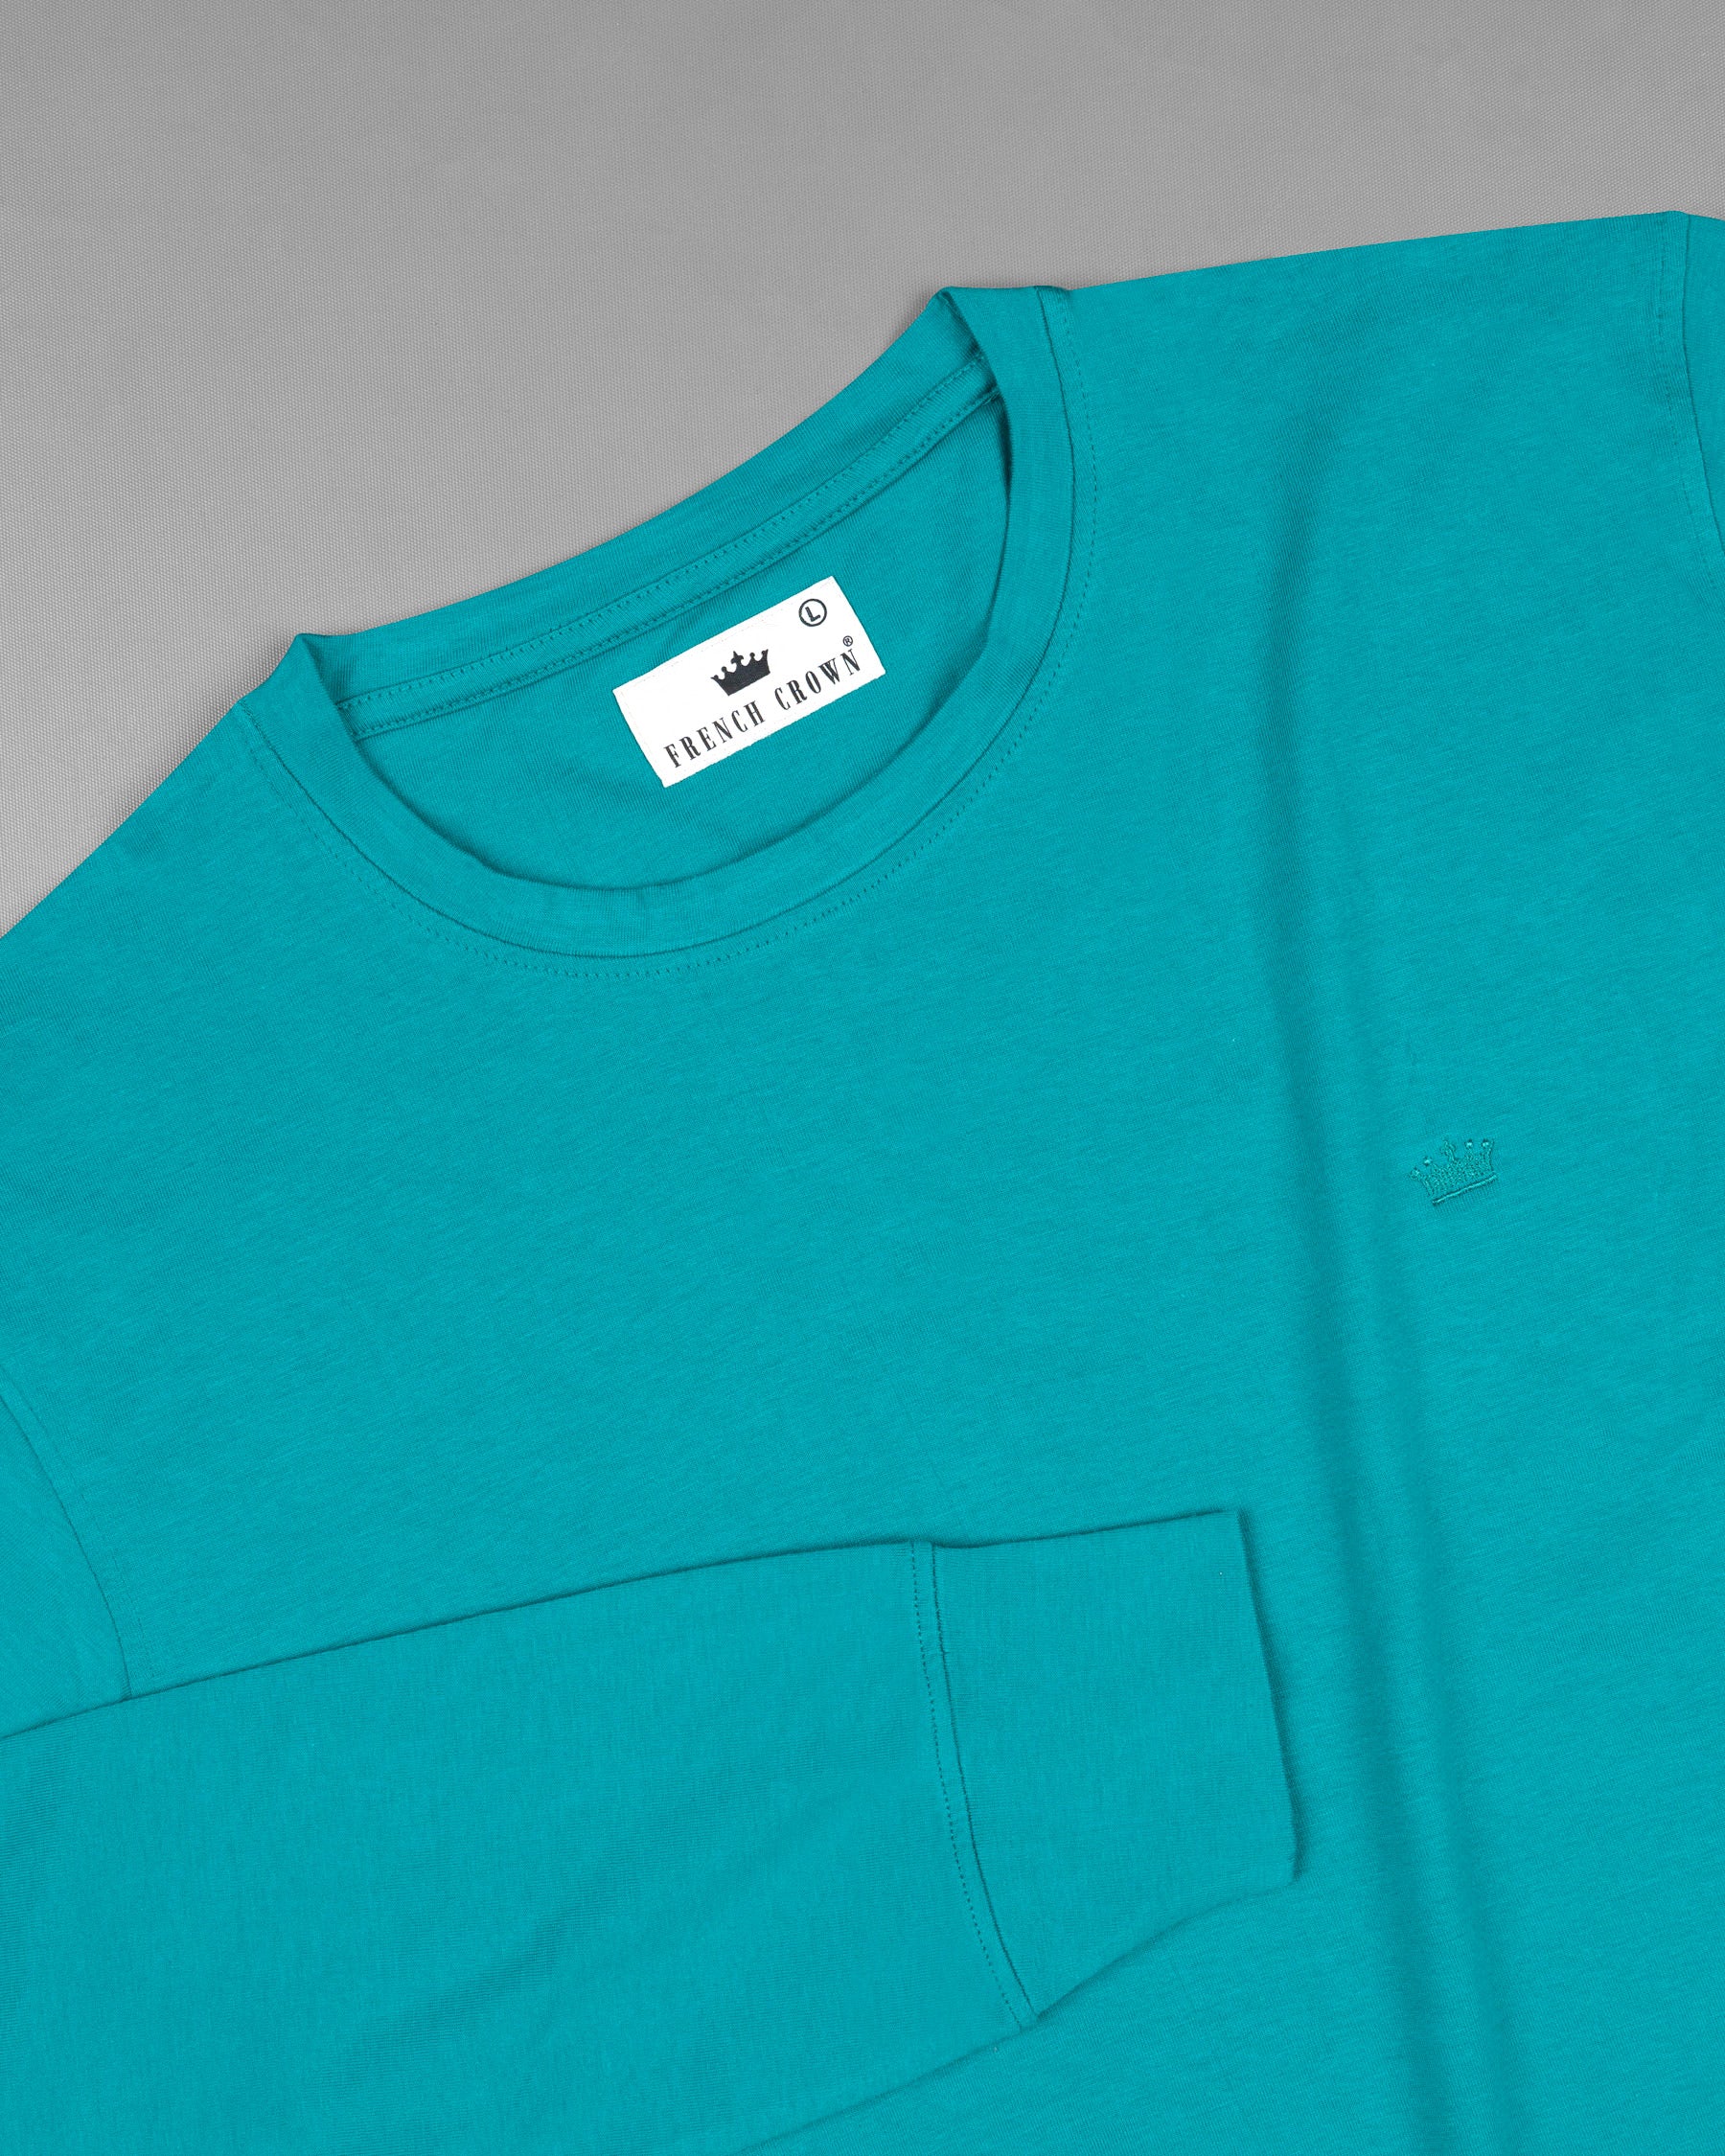 Blue Chill Full Sleeve Premium Cotton Jersey Sweatshirt TS497-S, TS497-M, TS497-L, TS497-XL, TS497-XXL